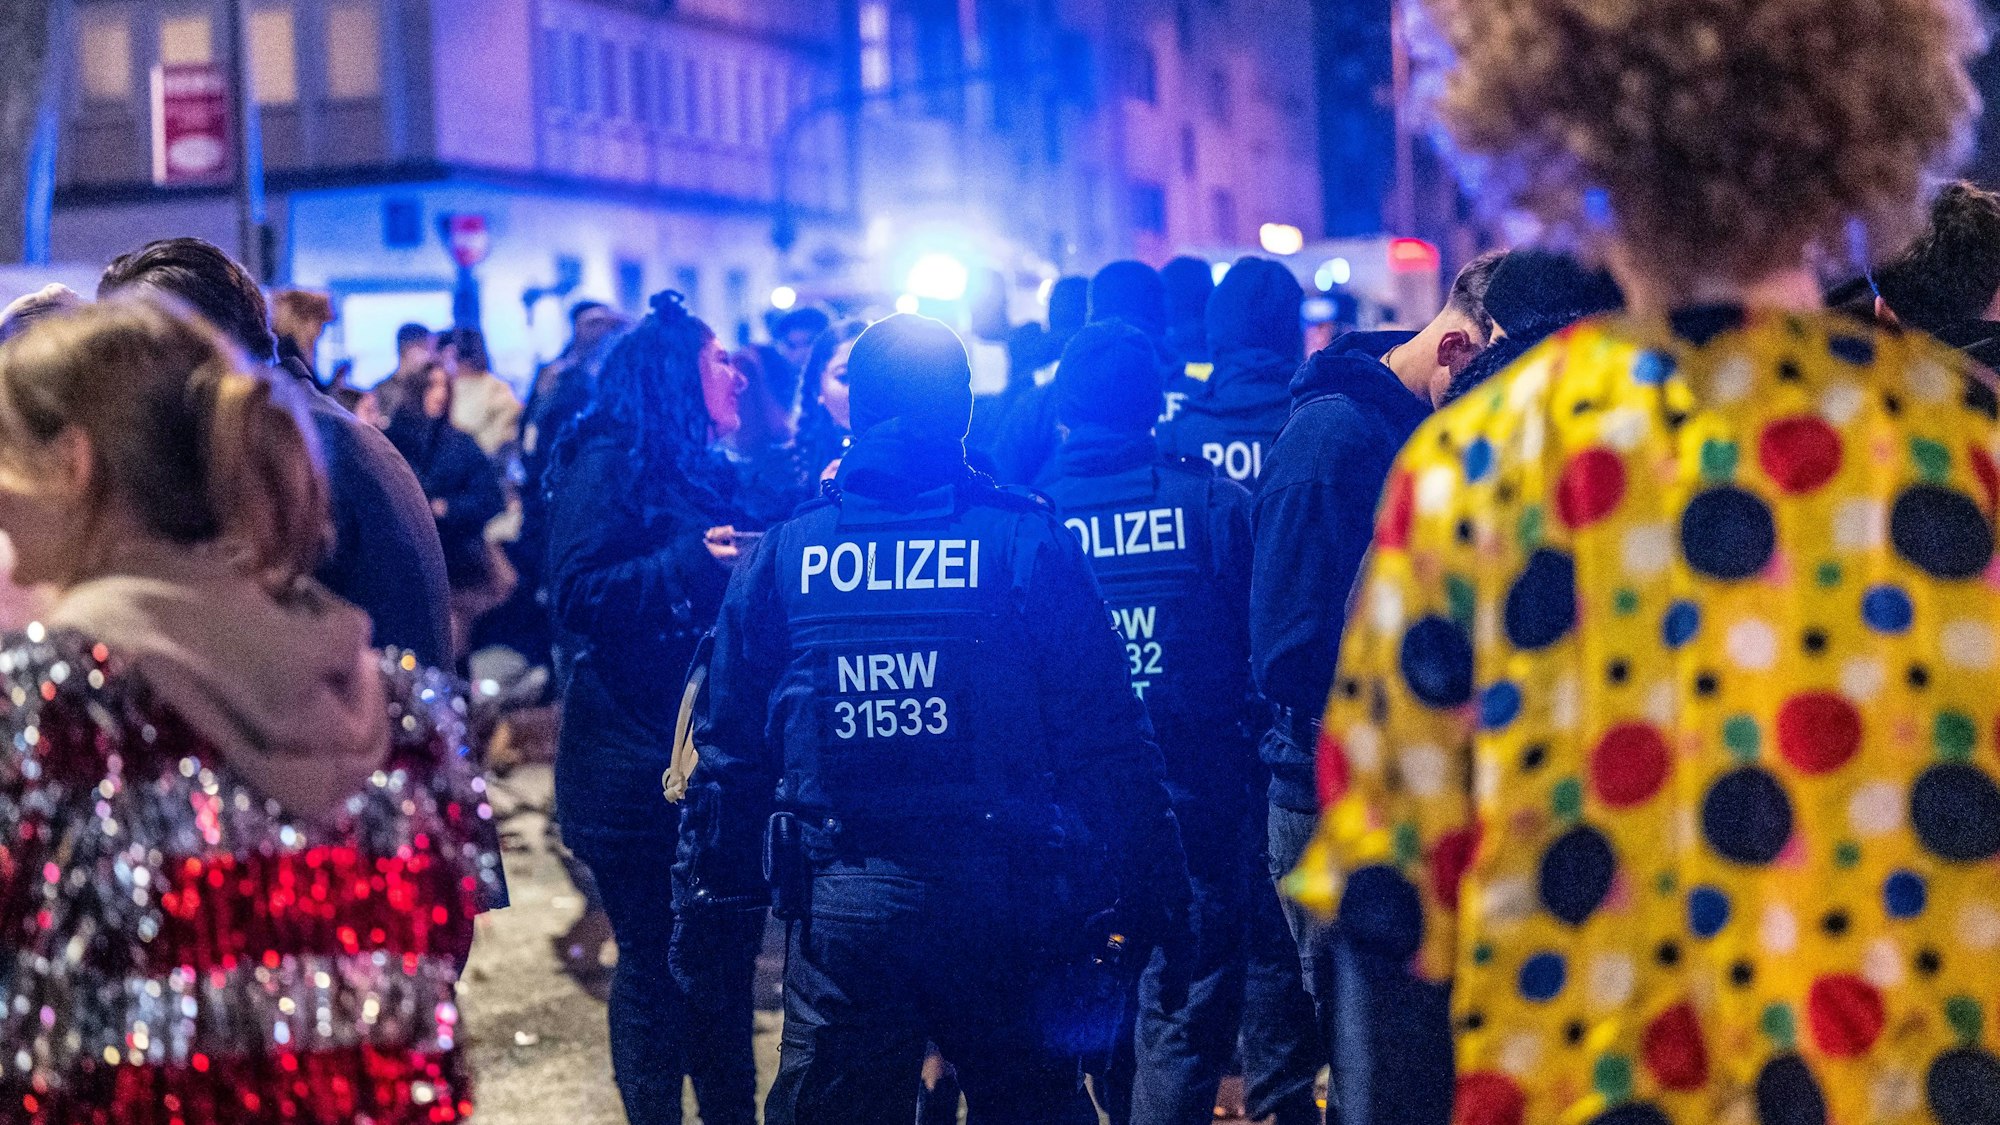 Polizisten kontrollieren das Partygeschehen von Karnevalisten auf der Zülpicher Straße in Köln.